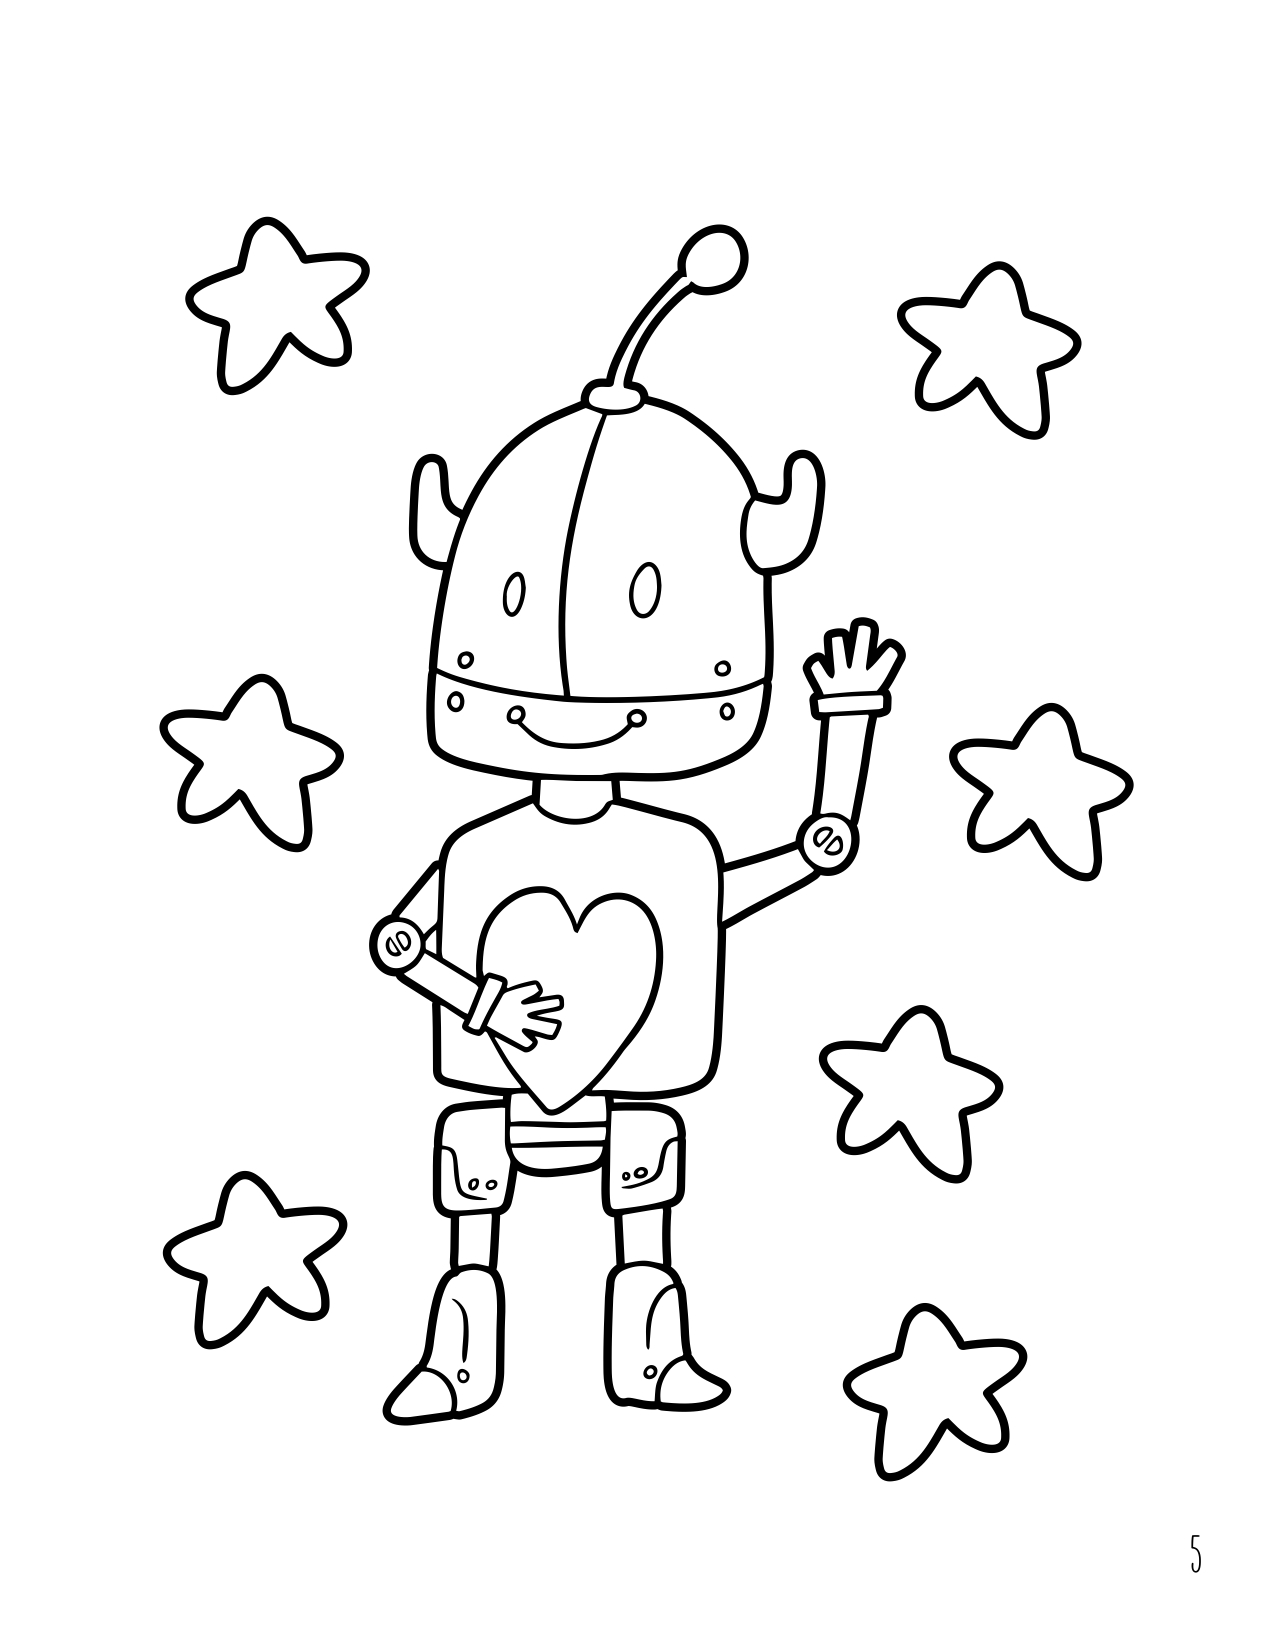 Tecknad stilrobot målarbok för barn